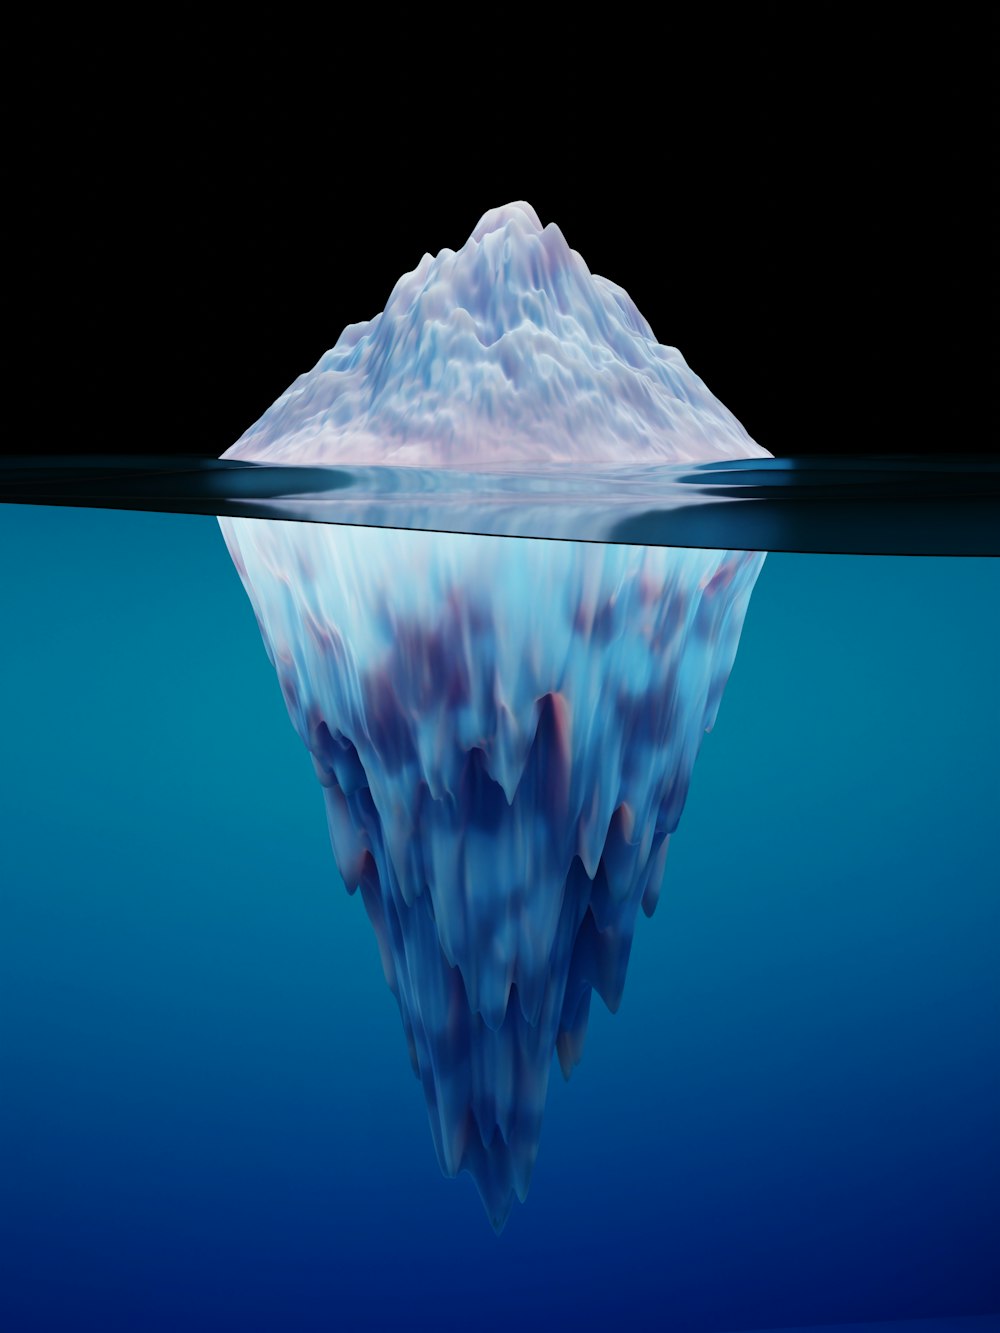 水に浮かぶ大きな氷山